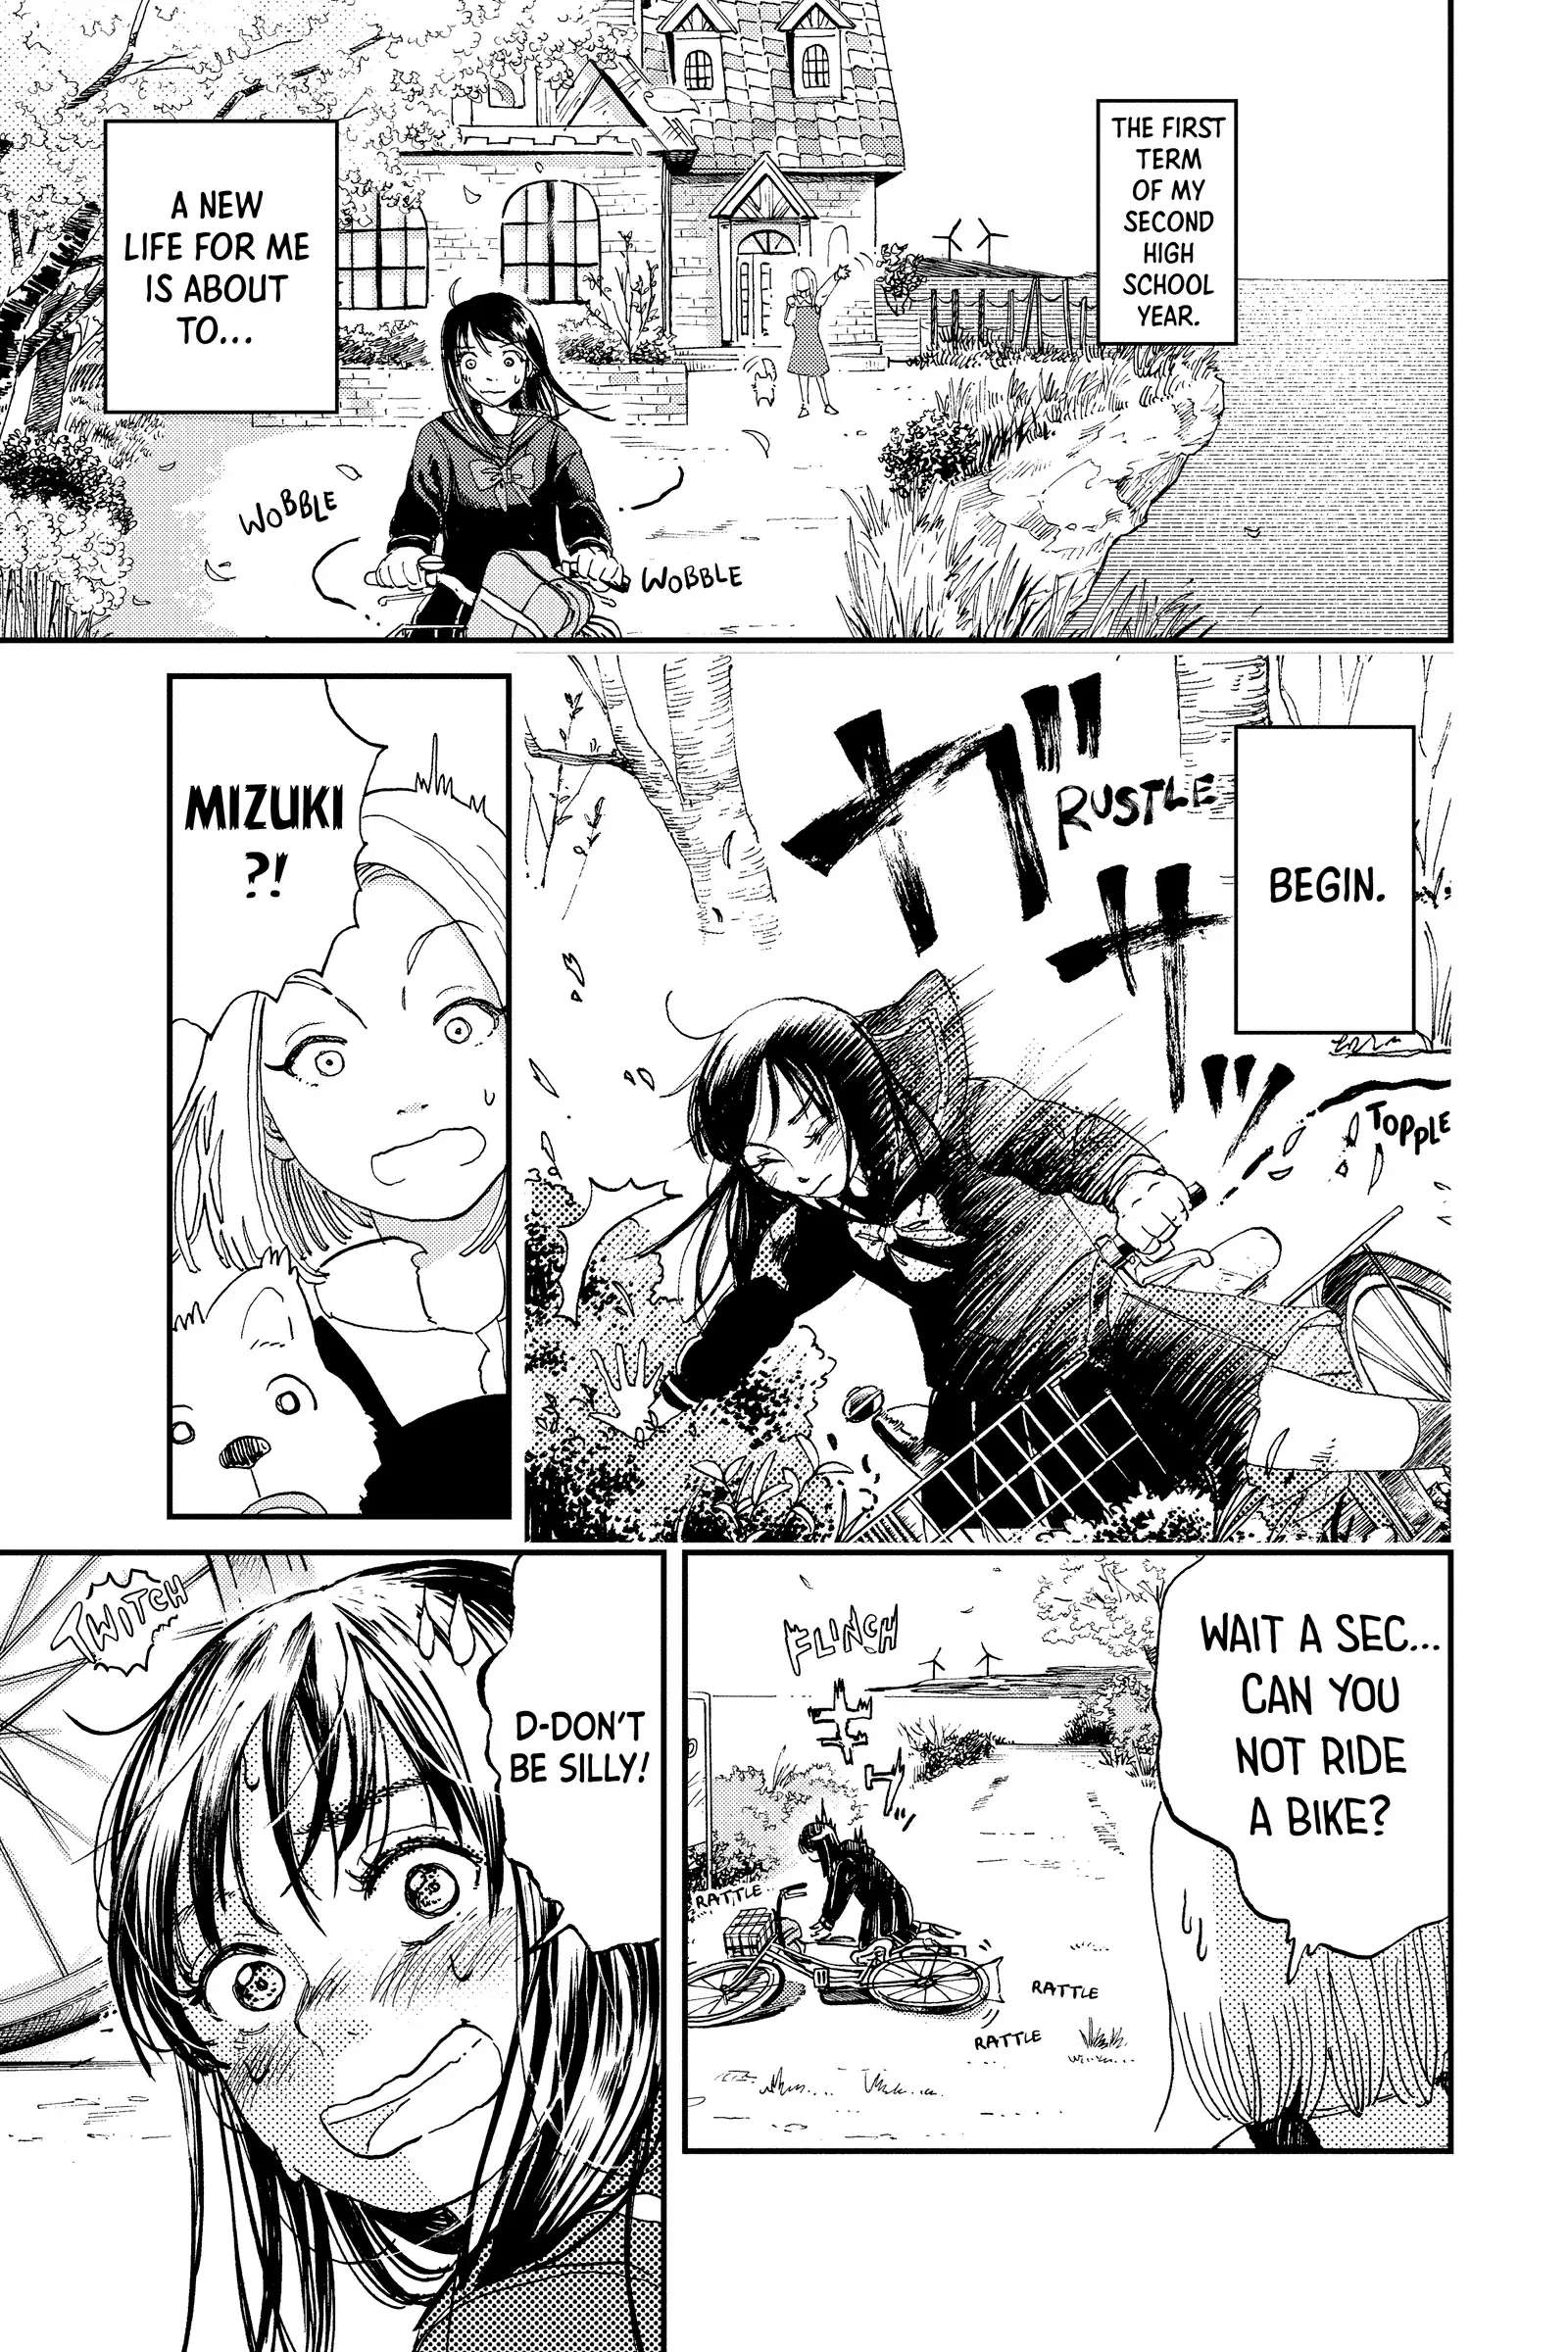 Mikazuki March - Page 4